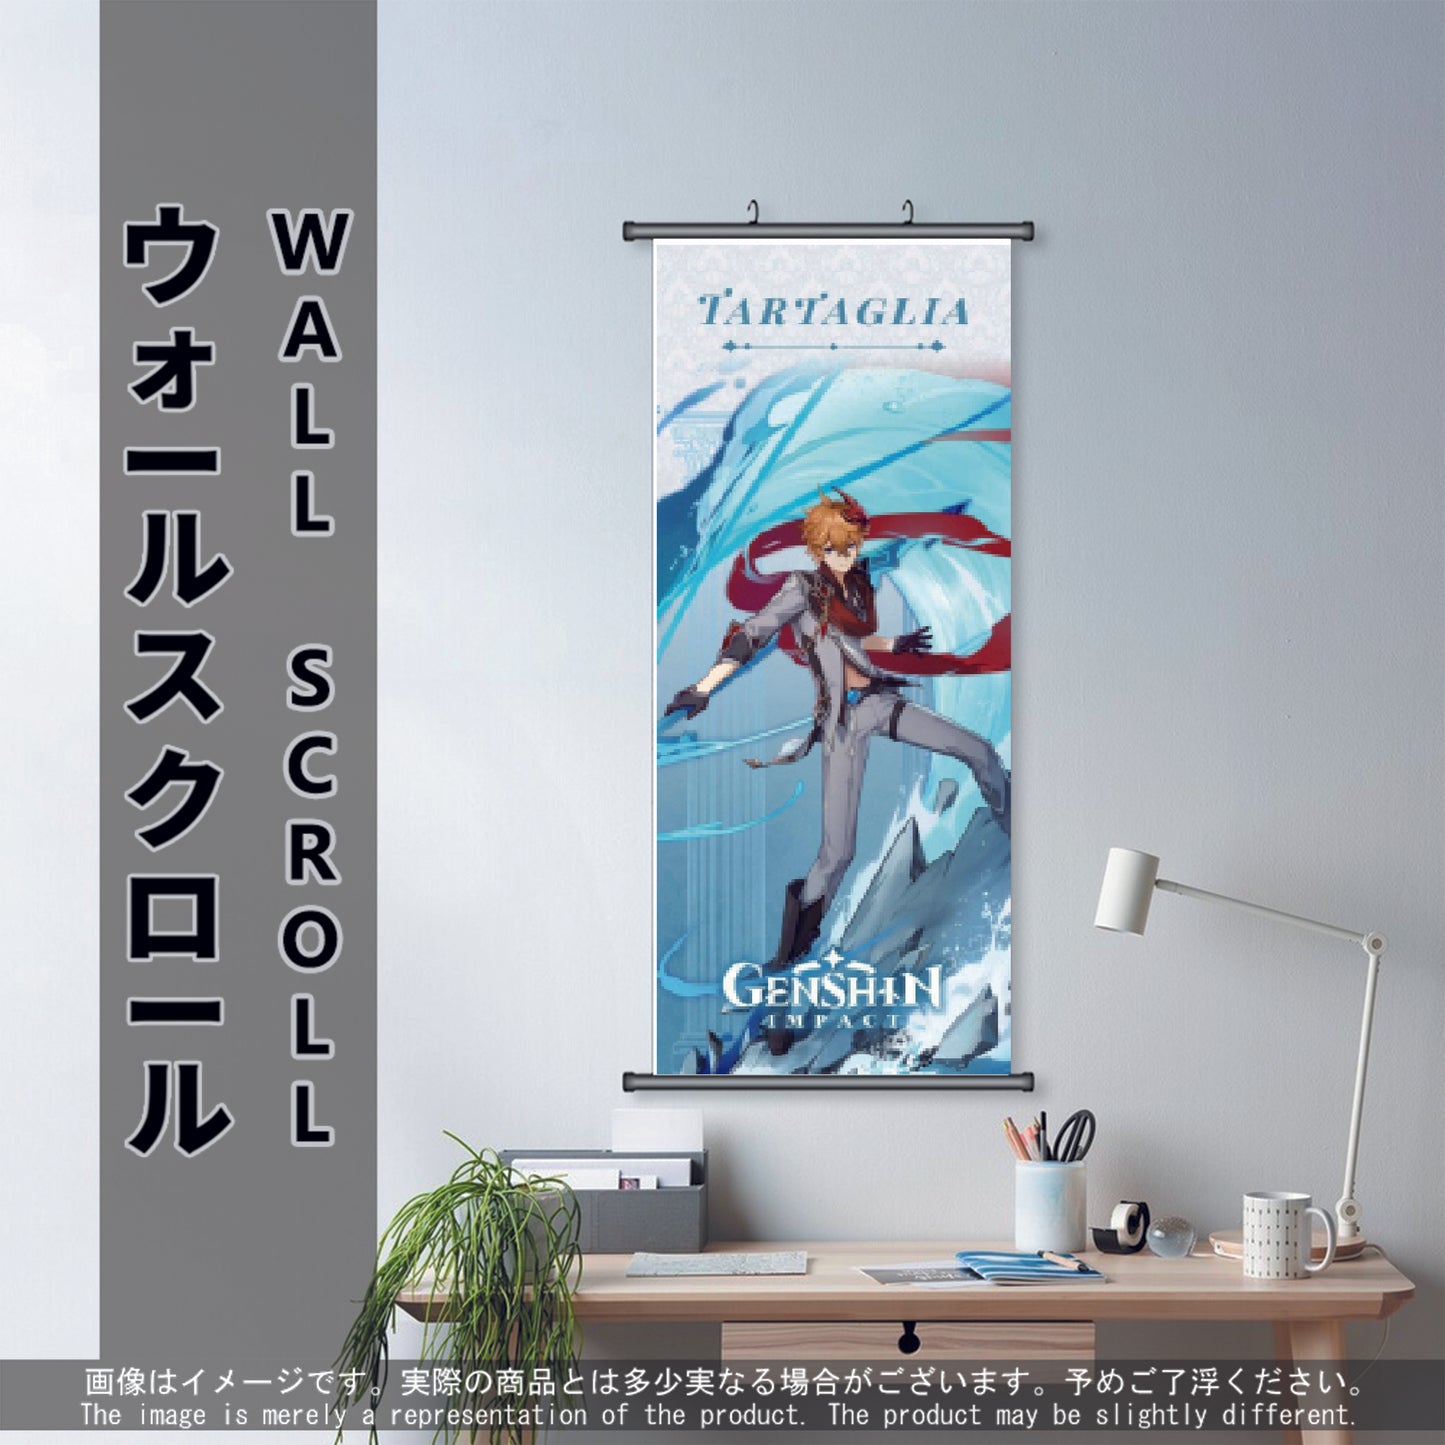 (GSN-HYDRO-03) TARTAGLIA Genshin Impact Anime Wall Scroll